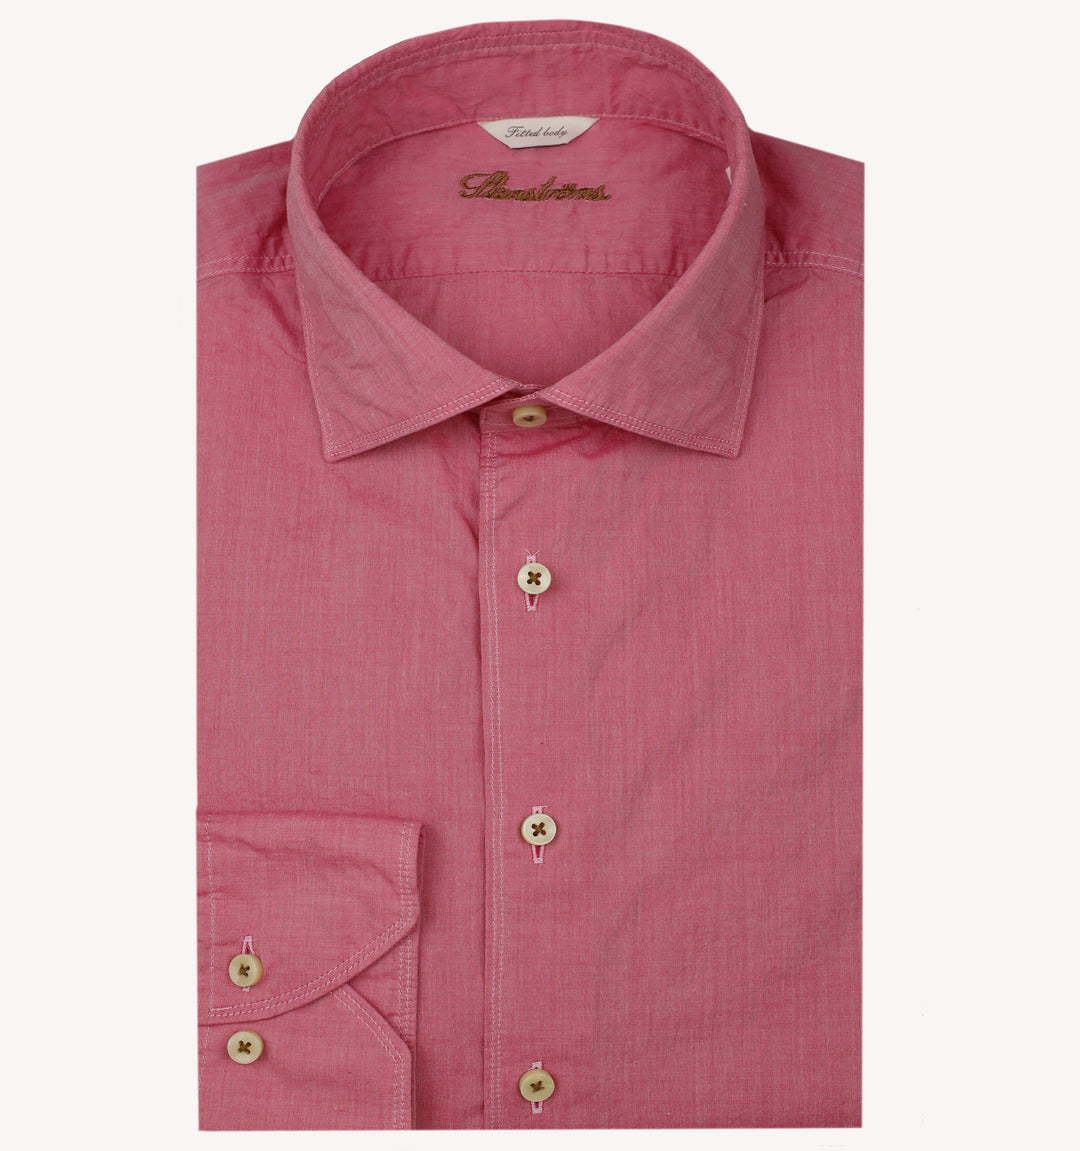 Stenstroms Sport Shirt in Pink